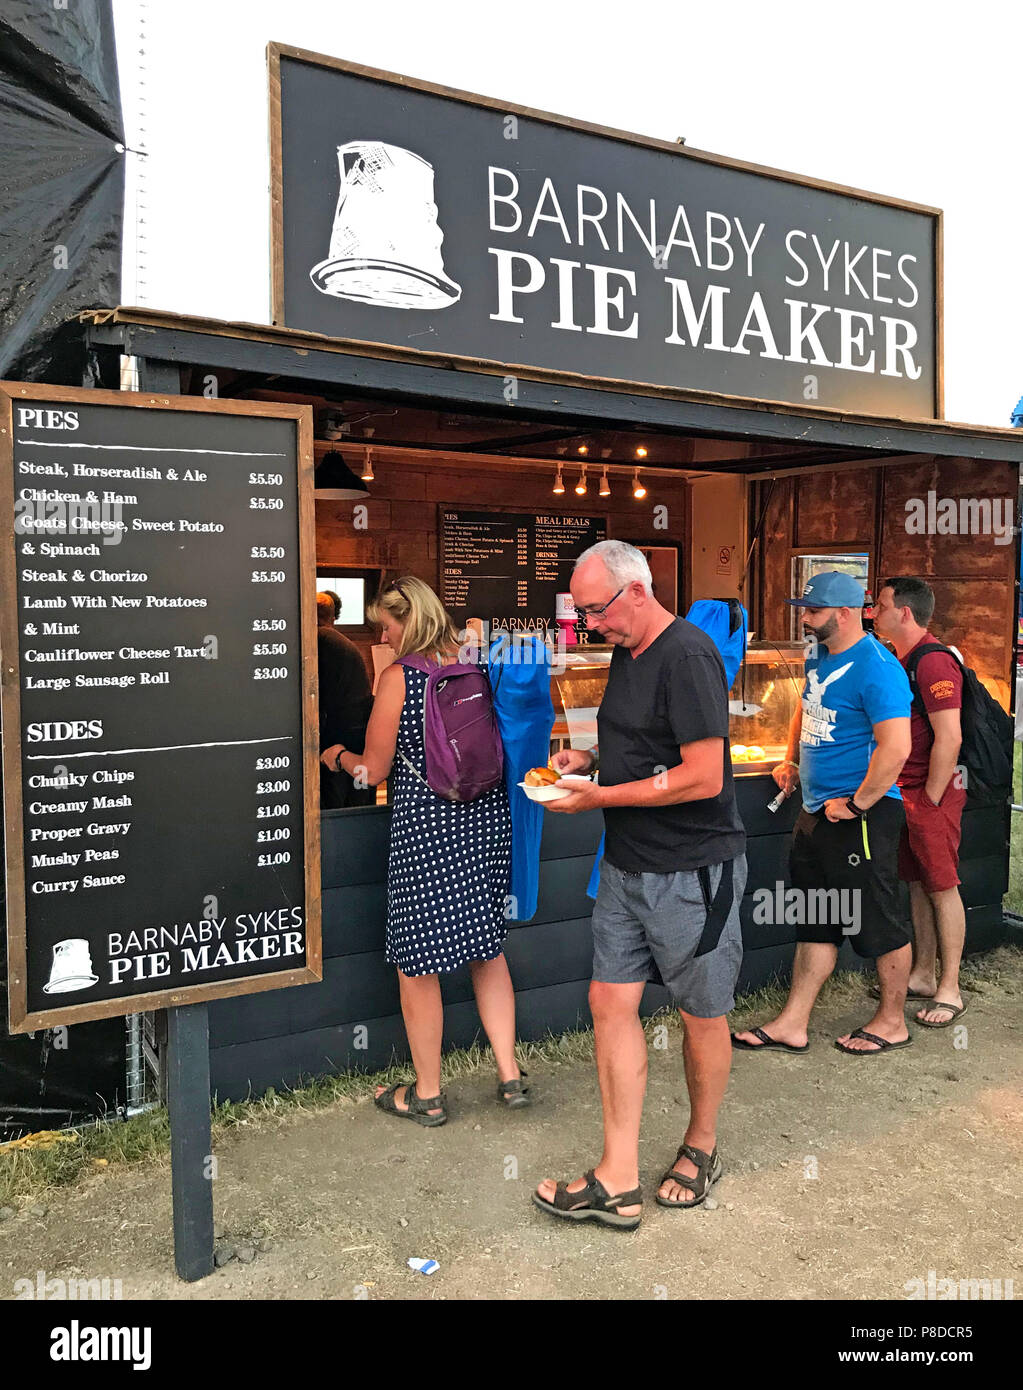 Barnaby Sykes Pie Maker stall, festival de la nourriture, bois, Grand Prix de Silverstone, Northampton, England, UK Banque D'Images